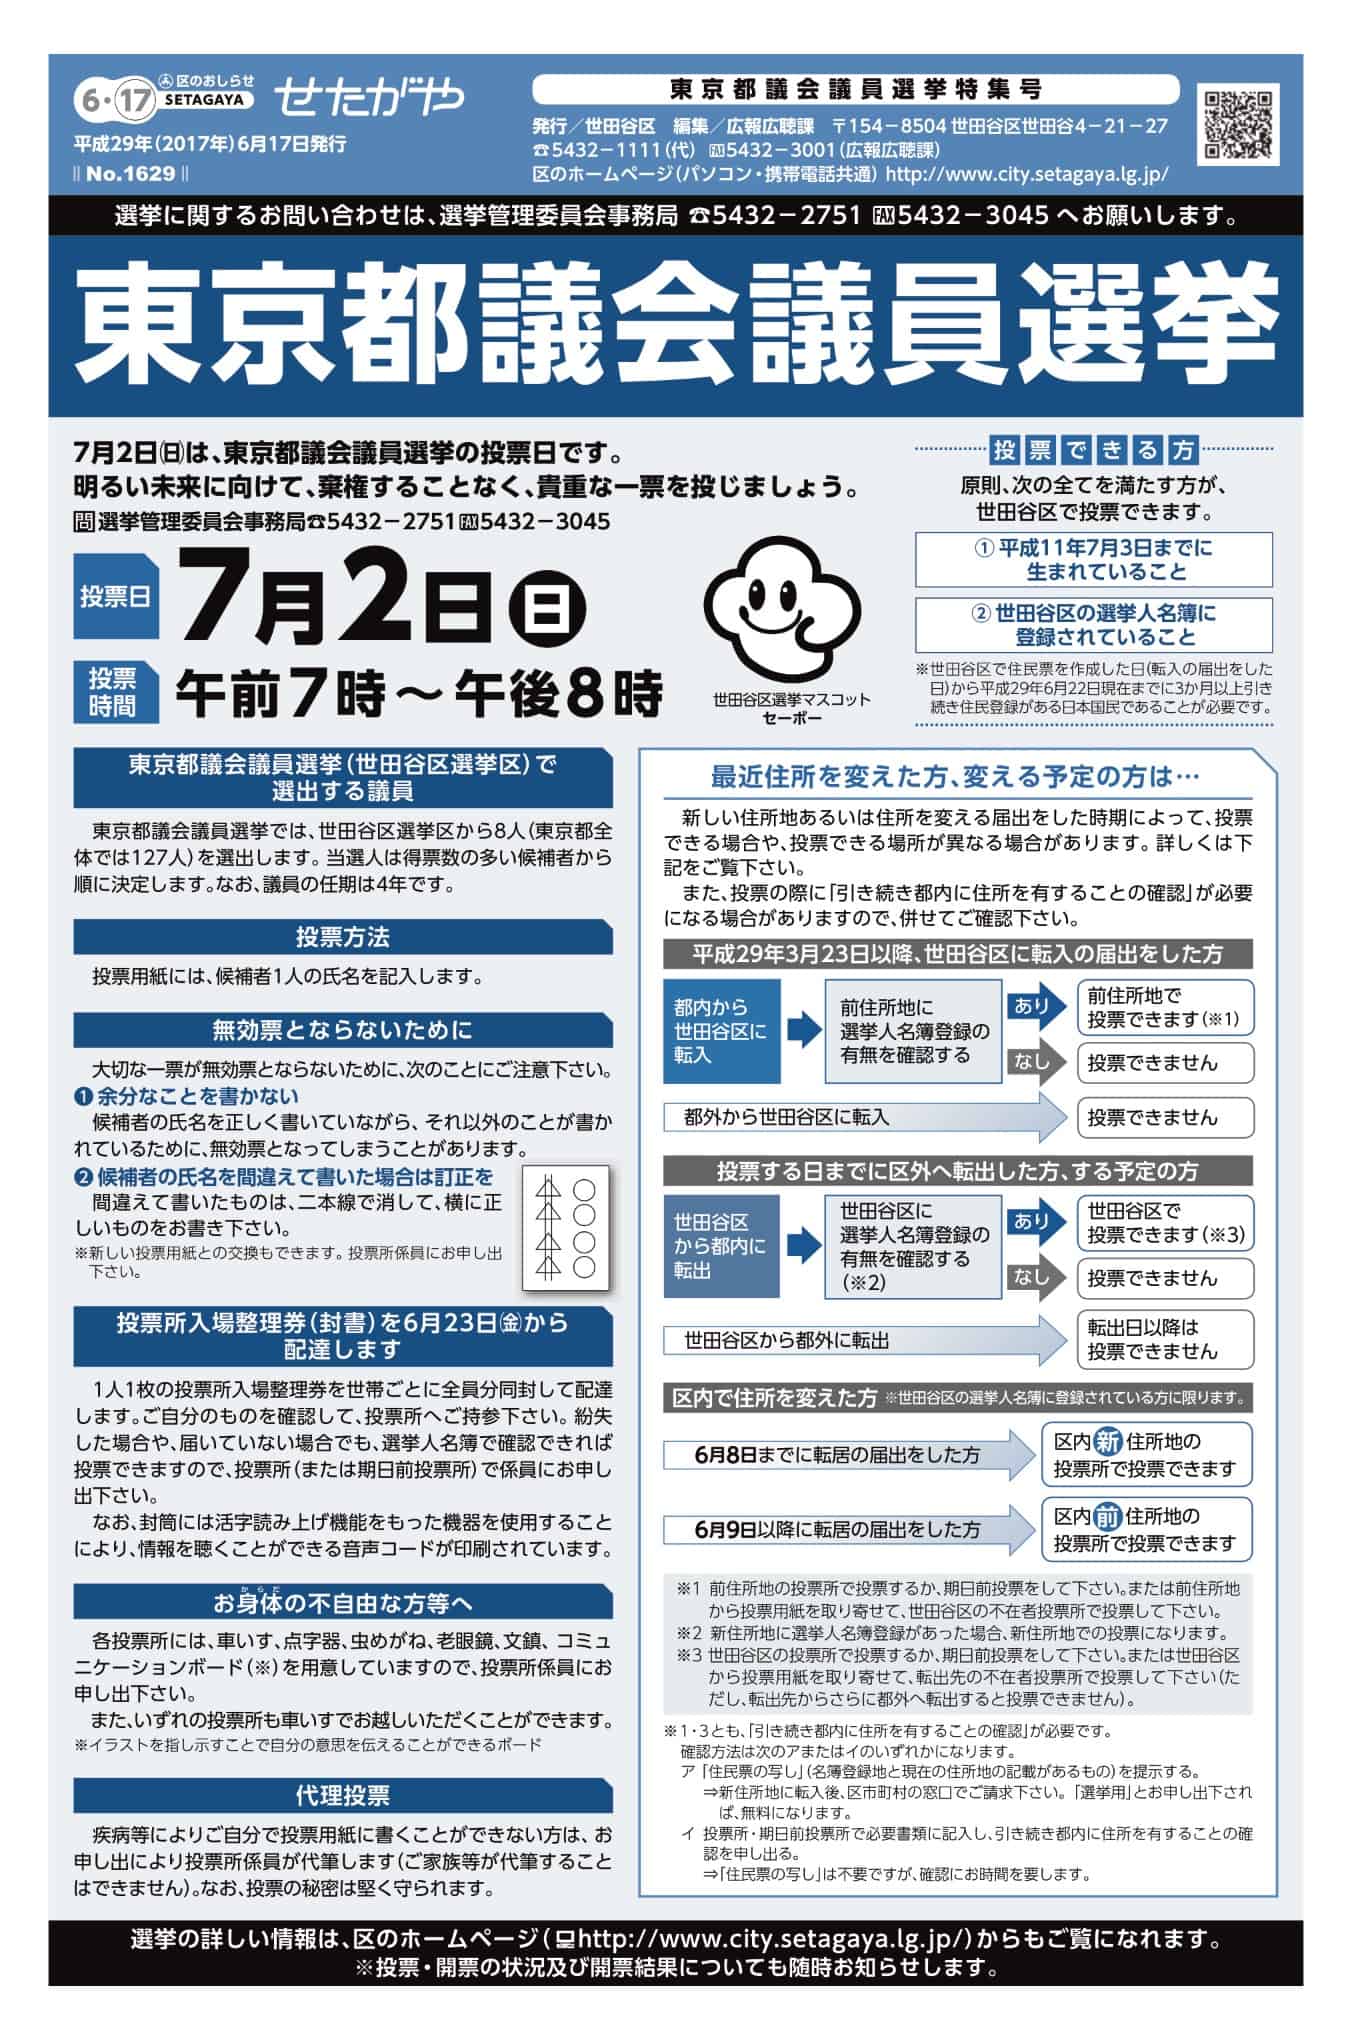 東京都議会議員選挙 投票日は7 2 日 期日前投票は6 24 土 から受付 Futakoloco